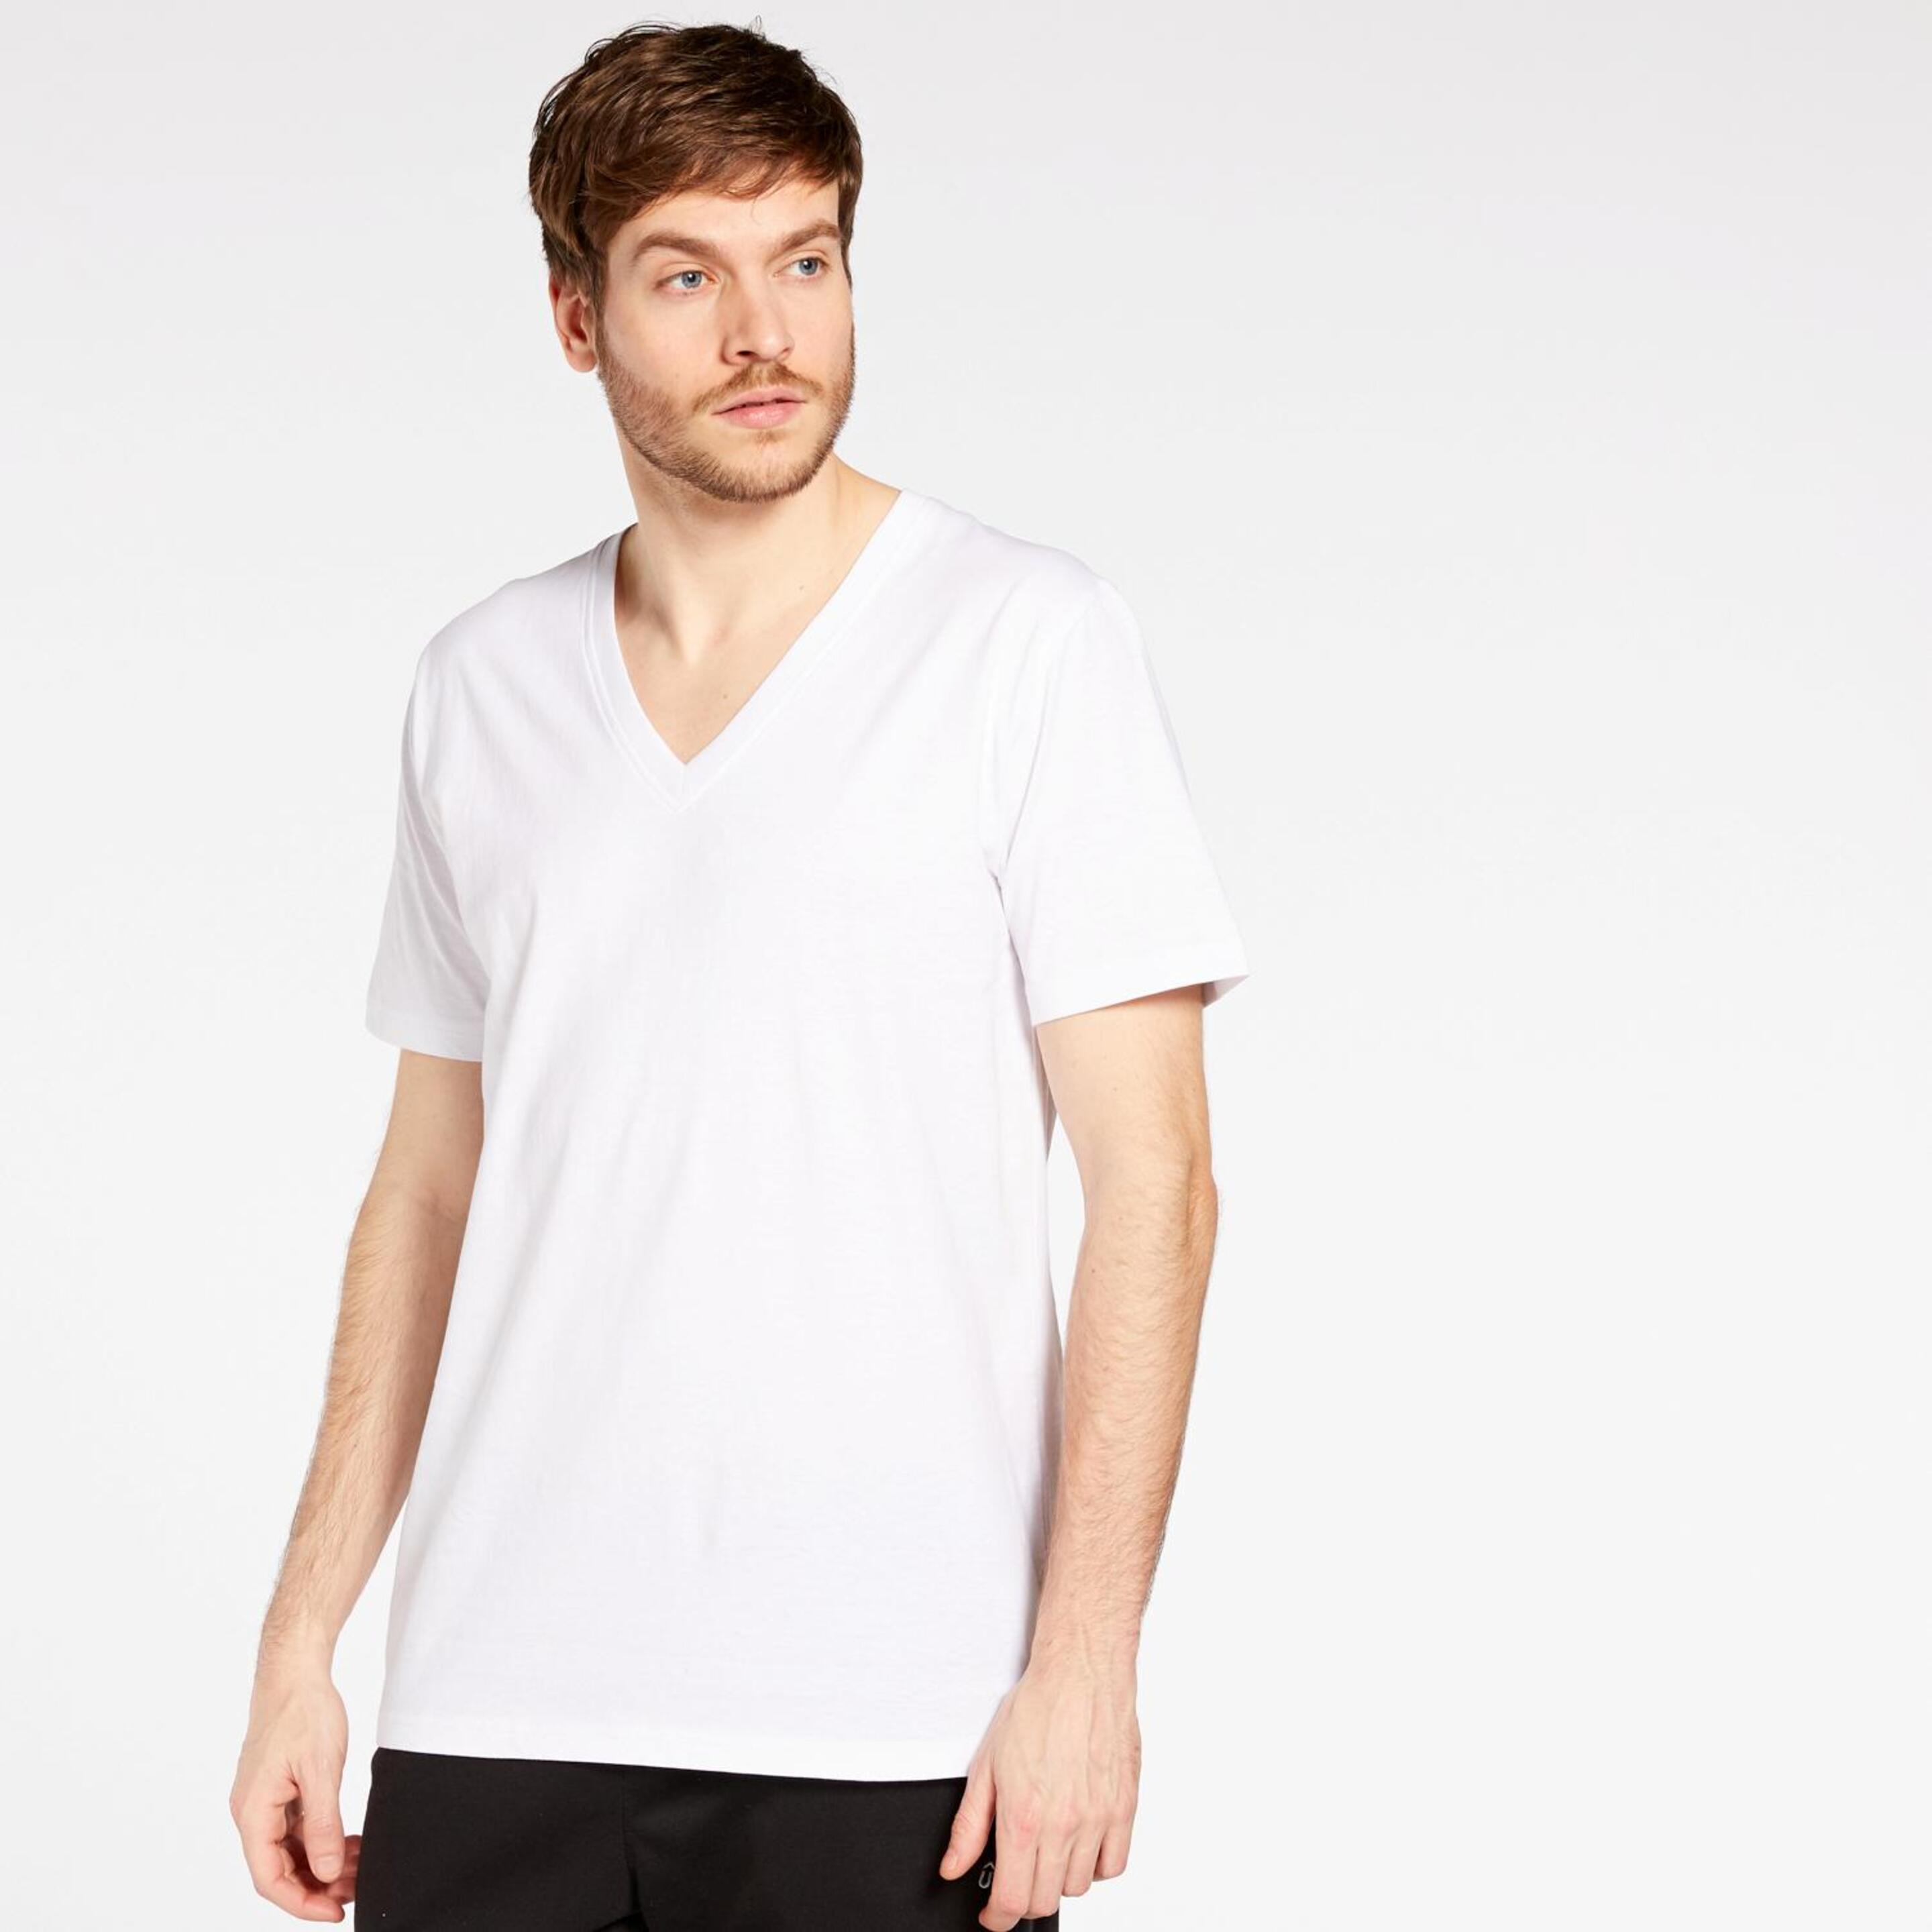 Up Basic - blanco - Camiseta Hombre